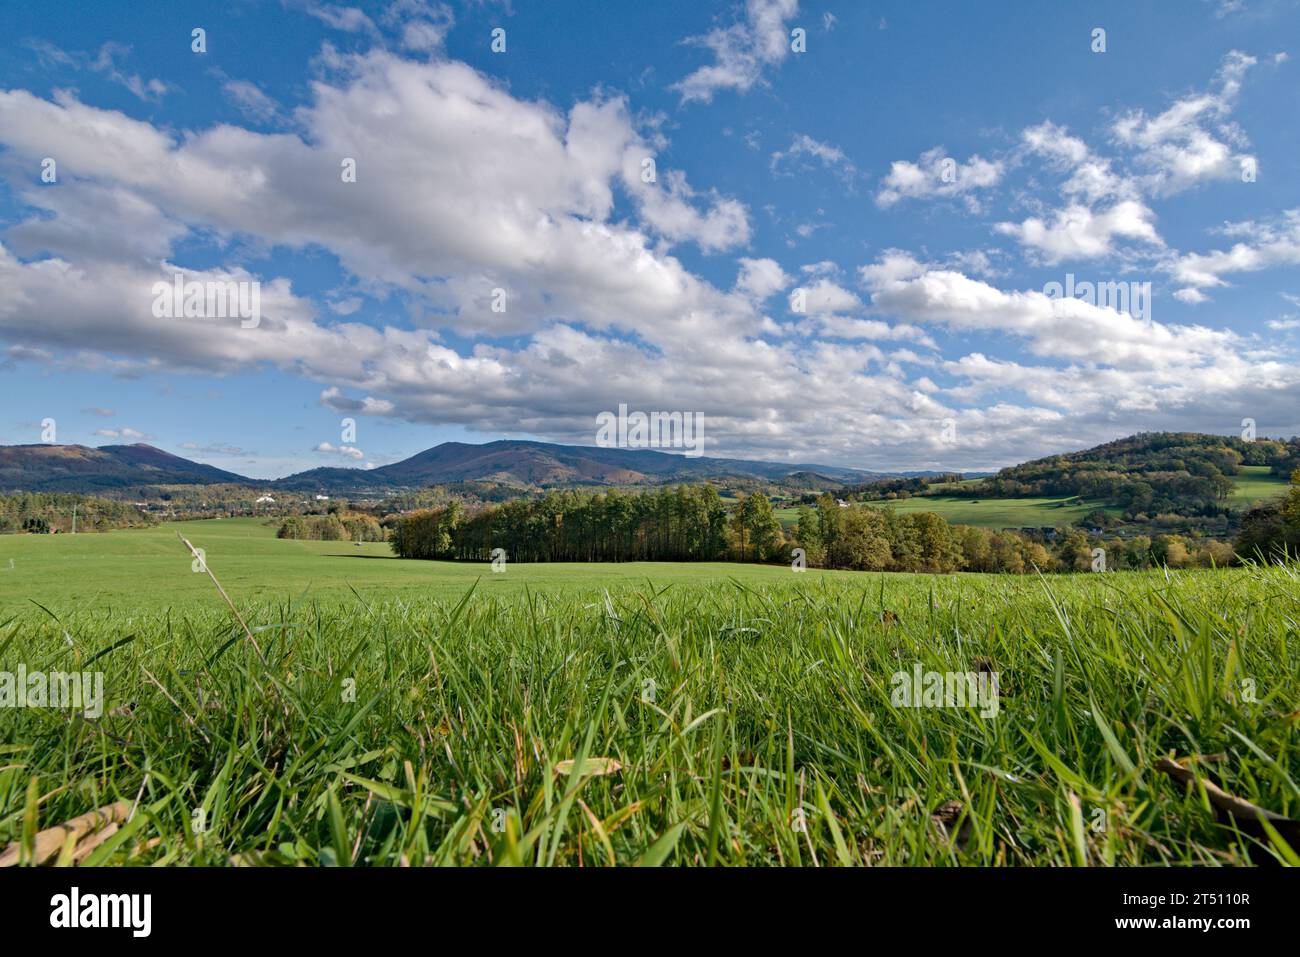 Der Radhost Berg und die umliegenden Hügel in der Nähe von Roznov Pod Radhostem, einer schönen kleinen Stadt in Tschechien. Landschaft mit Feldern, Weiden und Wiesen. Stockfoto